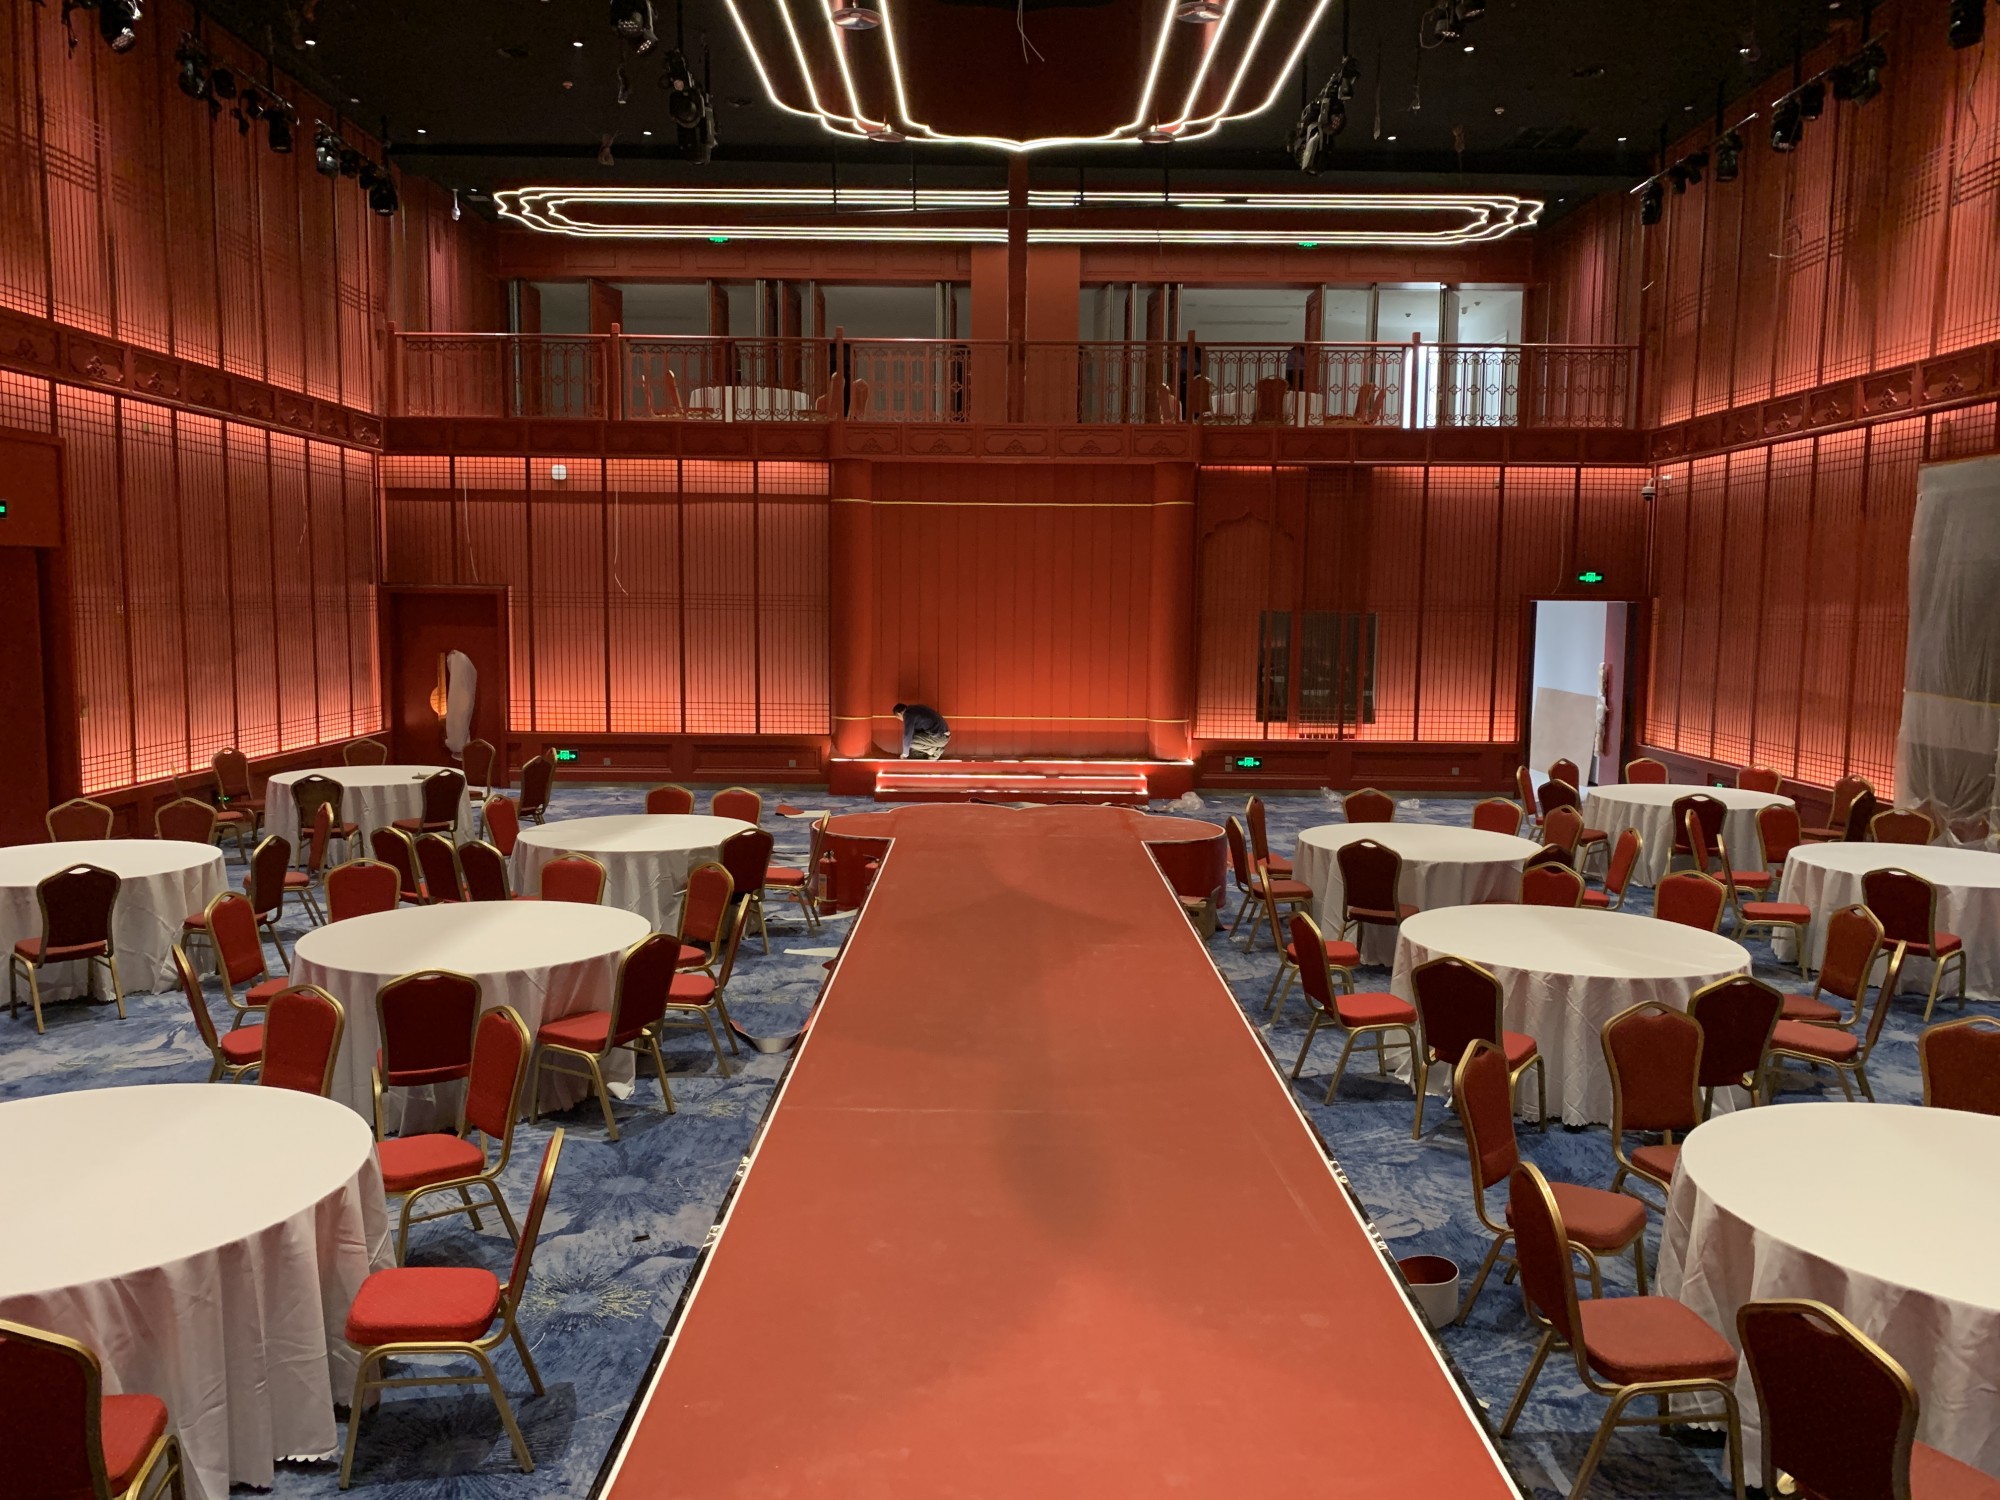 上海婚宴酒店定制地毯工厂  若兰地毯   主题餐厅饭店来图可制作  免费提供样品